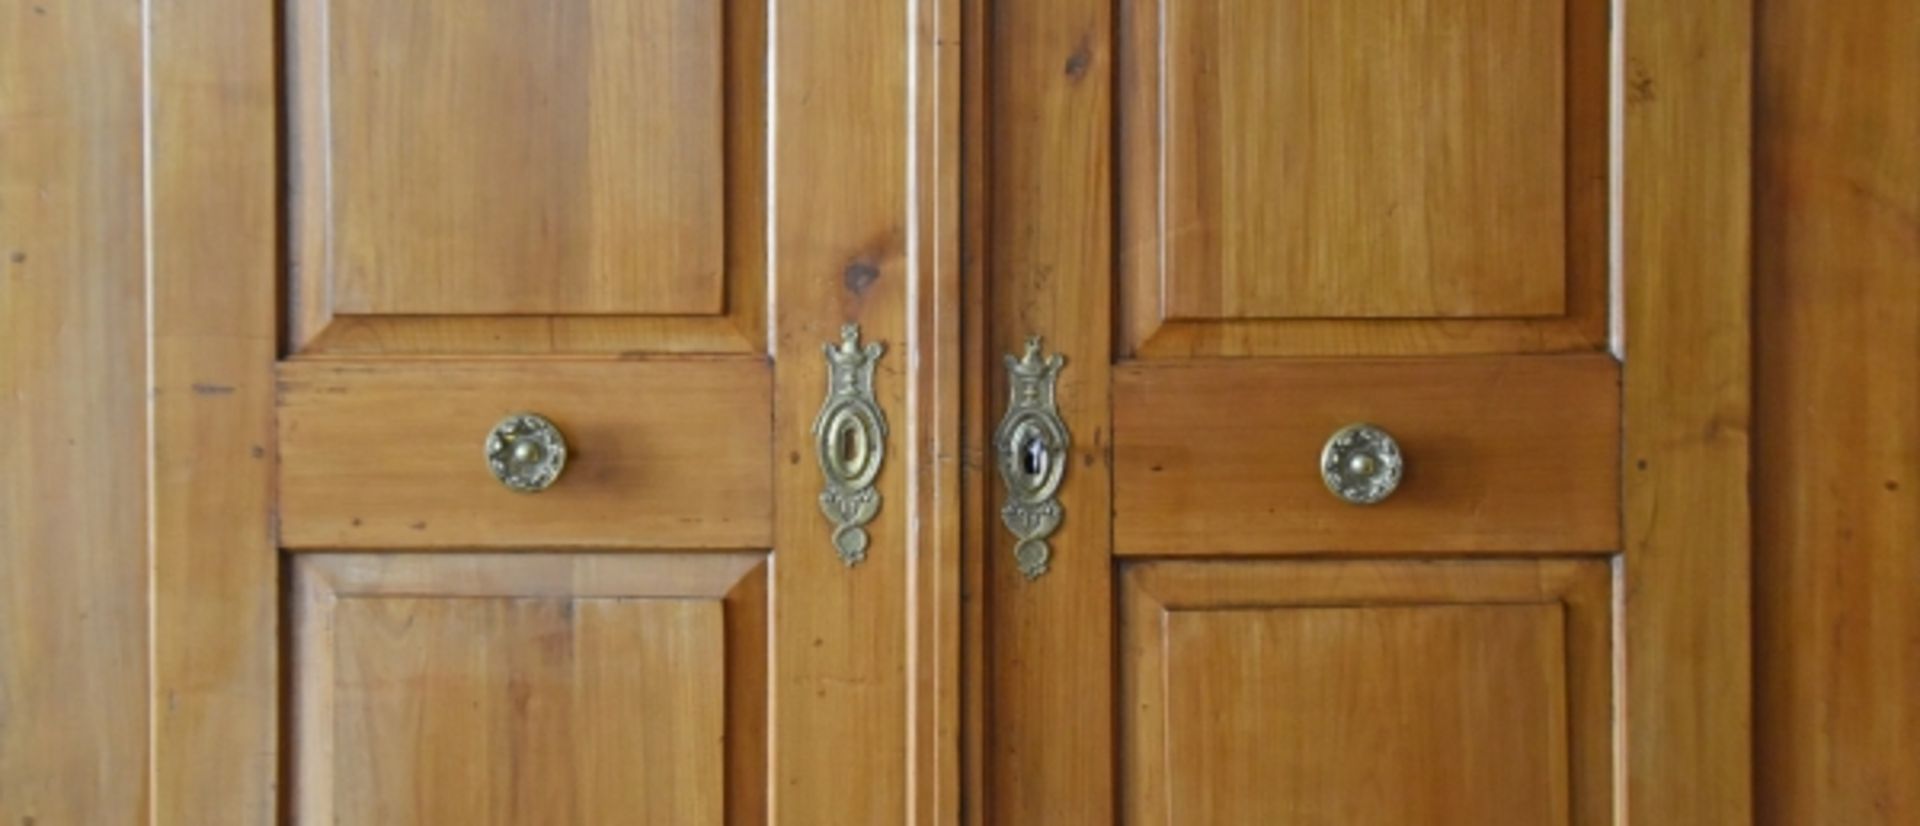 BODENSEESCHRANK zweitürig, die Türen oben geschwungen, mit zwei erhabenen Kassetten, profilierter - Image 8 of 9